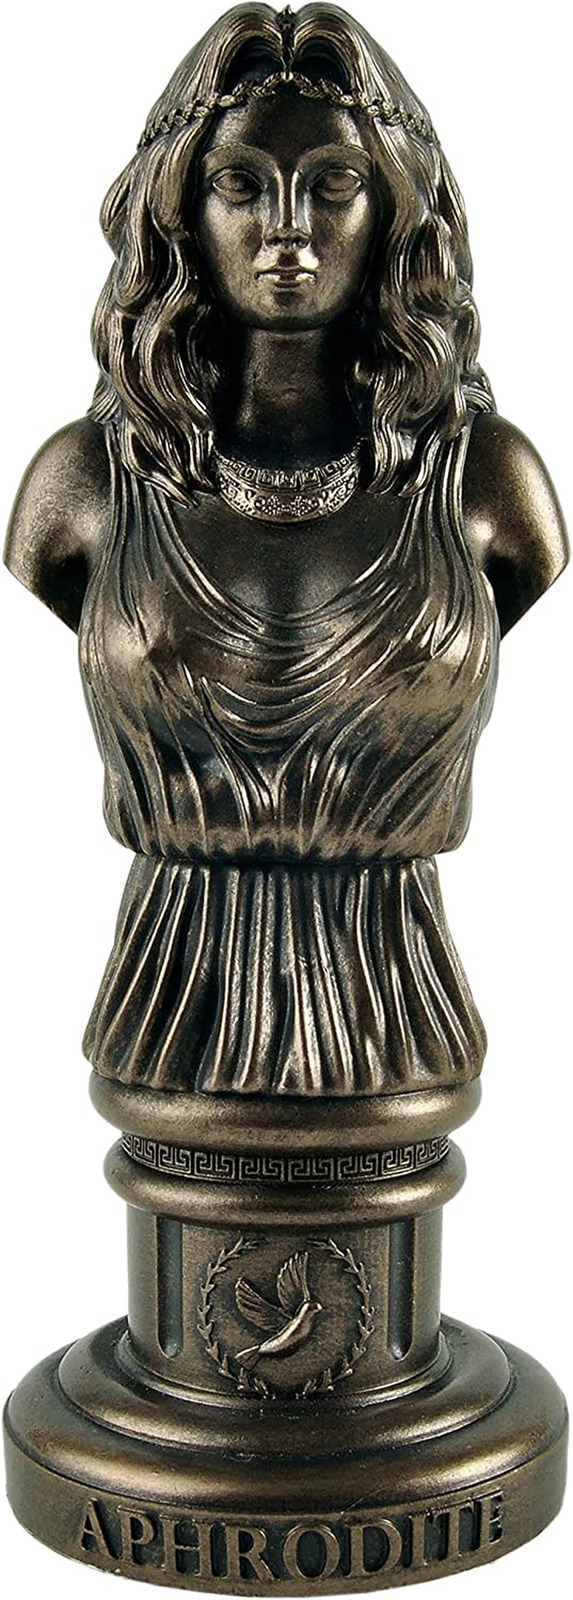 Aphrodite Love Goddess Bust Figurine